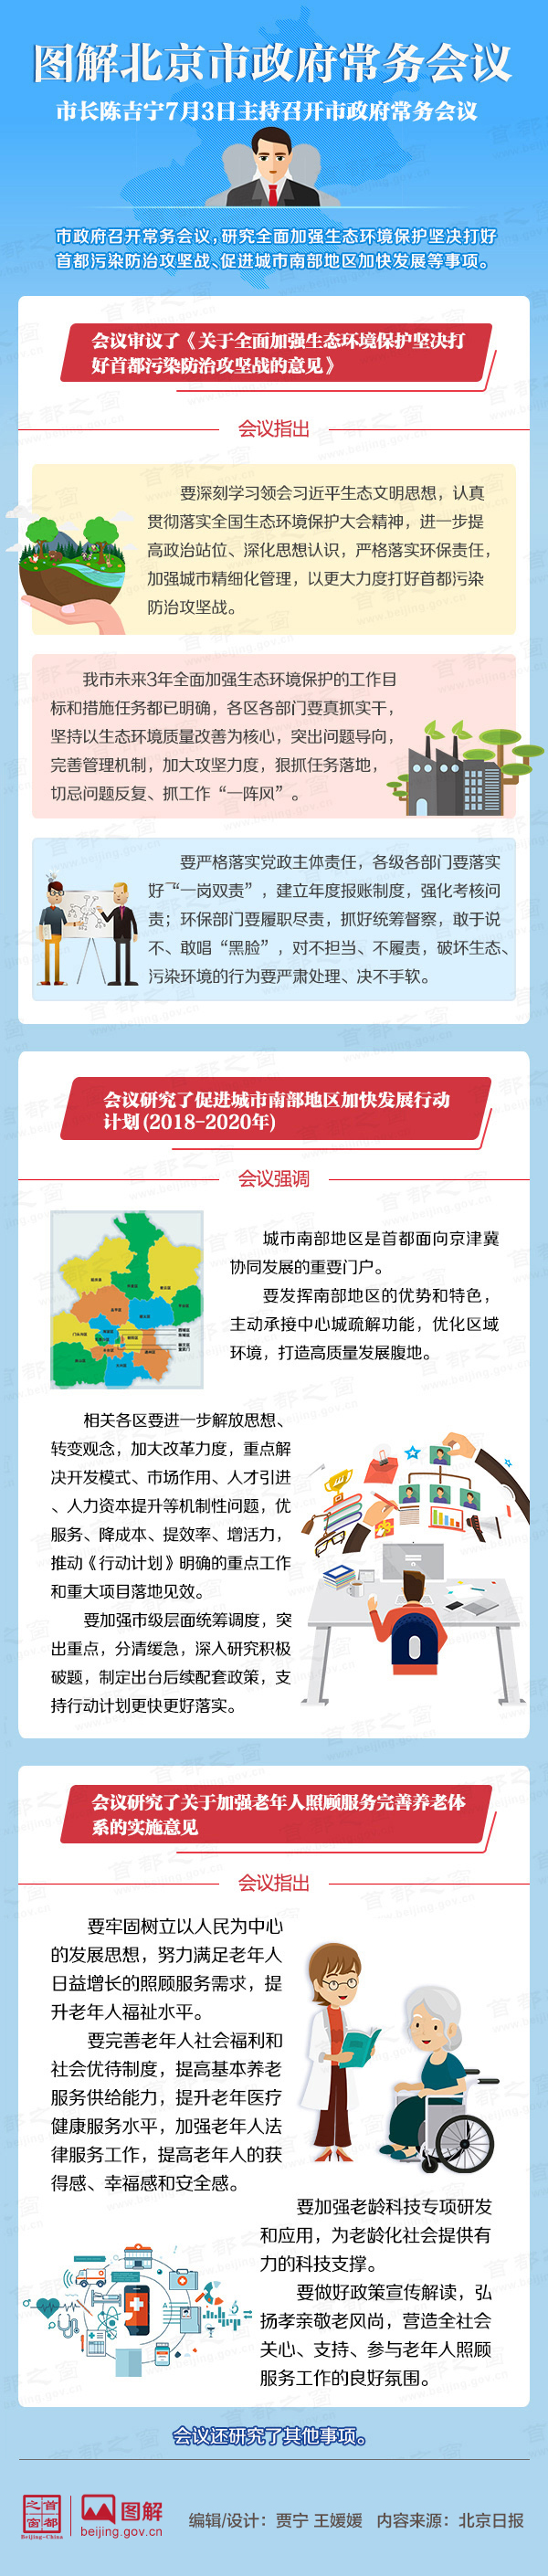 圖解2018年7月3日北京市政府常務會議